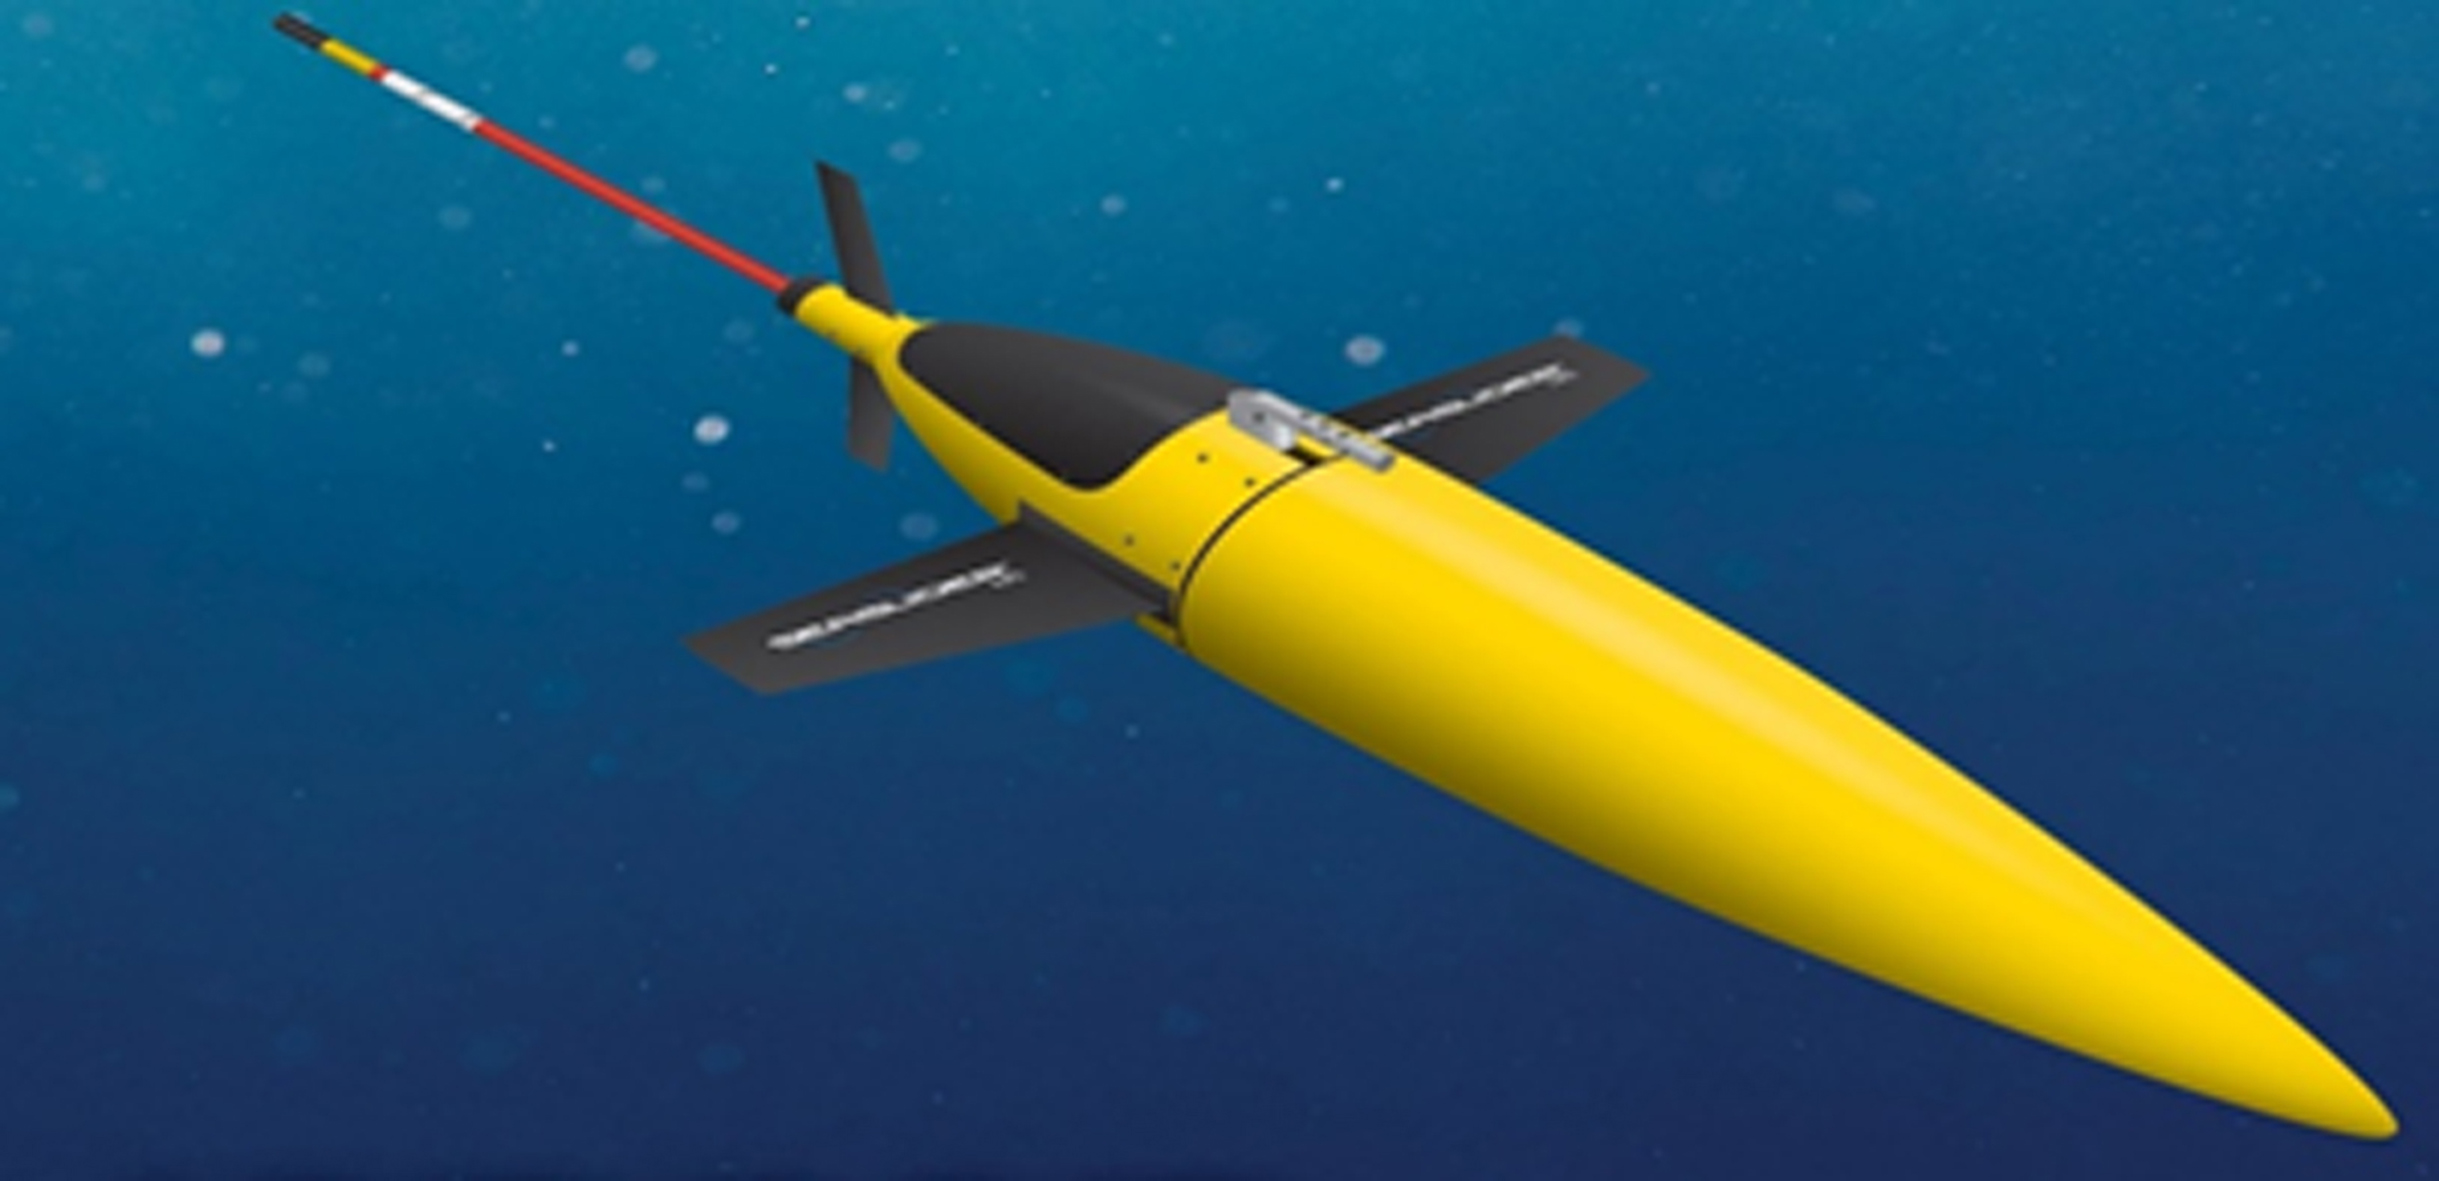 Глубоководный автономный подводный аппарат (AUV) «Seaglider» (Морской планер), антенна связи и отсек с полезной нагрузкой располагается в кормовой части, защитный обтекатель ограничивает носовую часть [4]